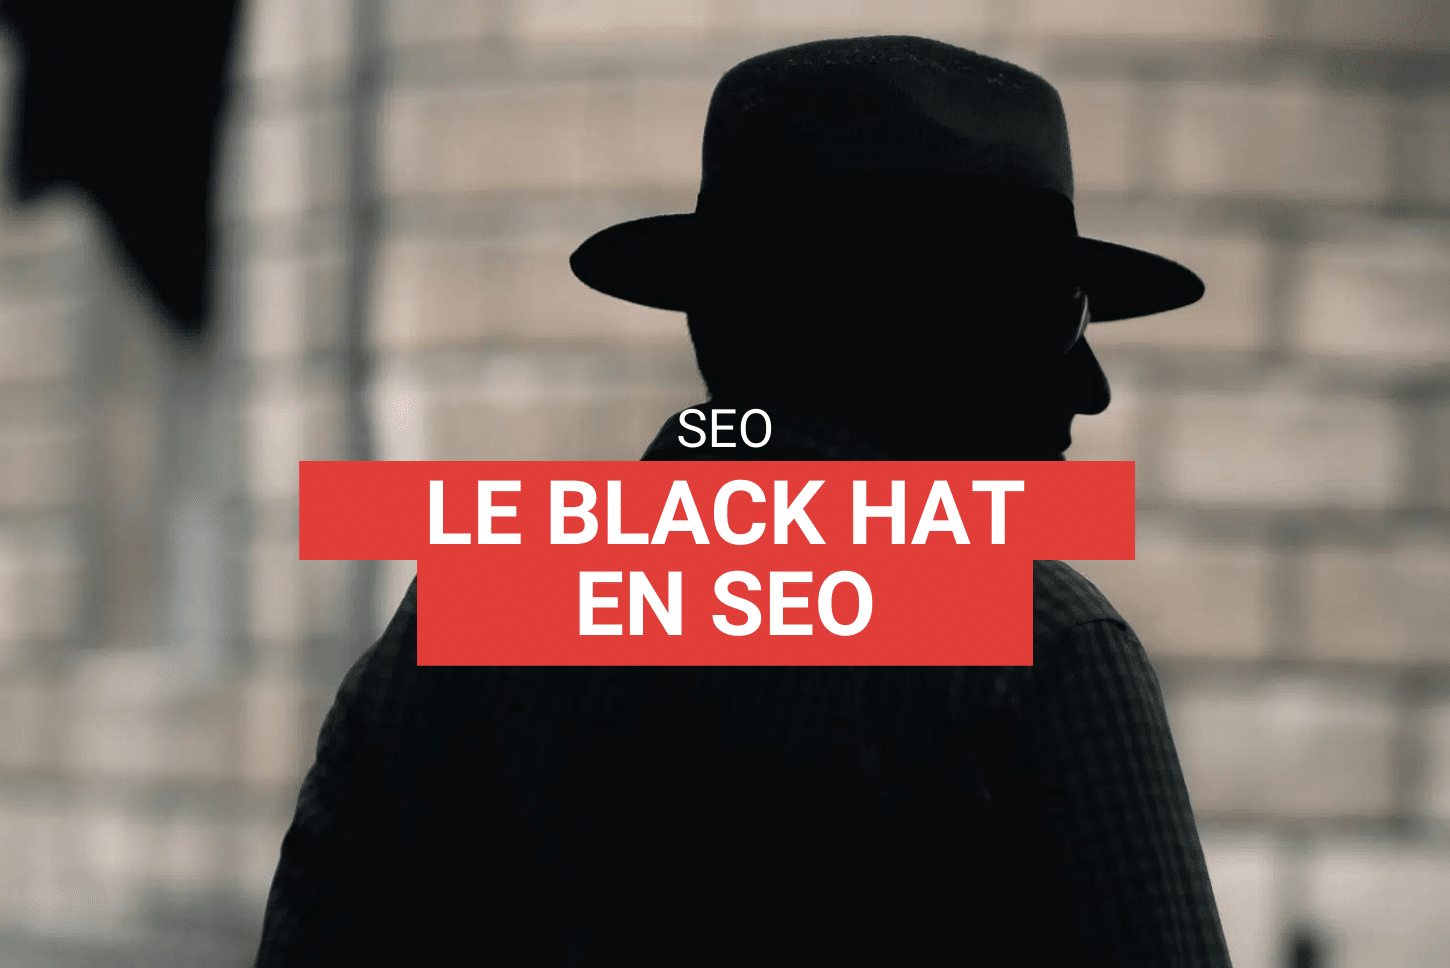 Qu'est ce que le black hat en SEO et en quoi consiste t-il ?